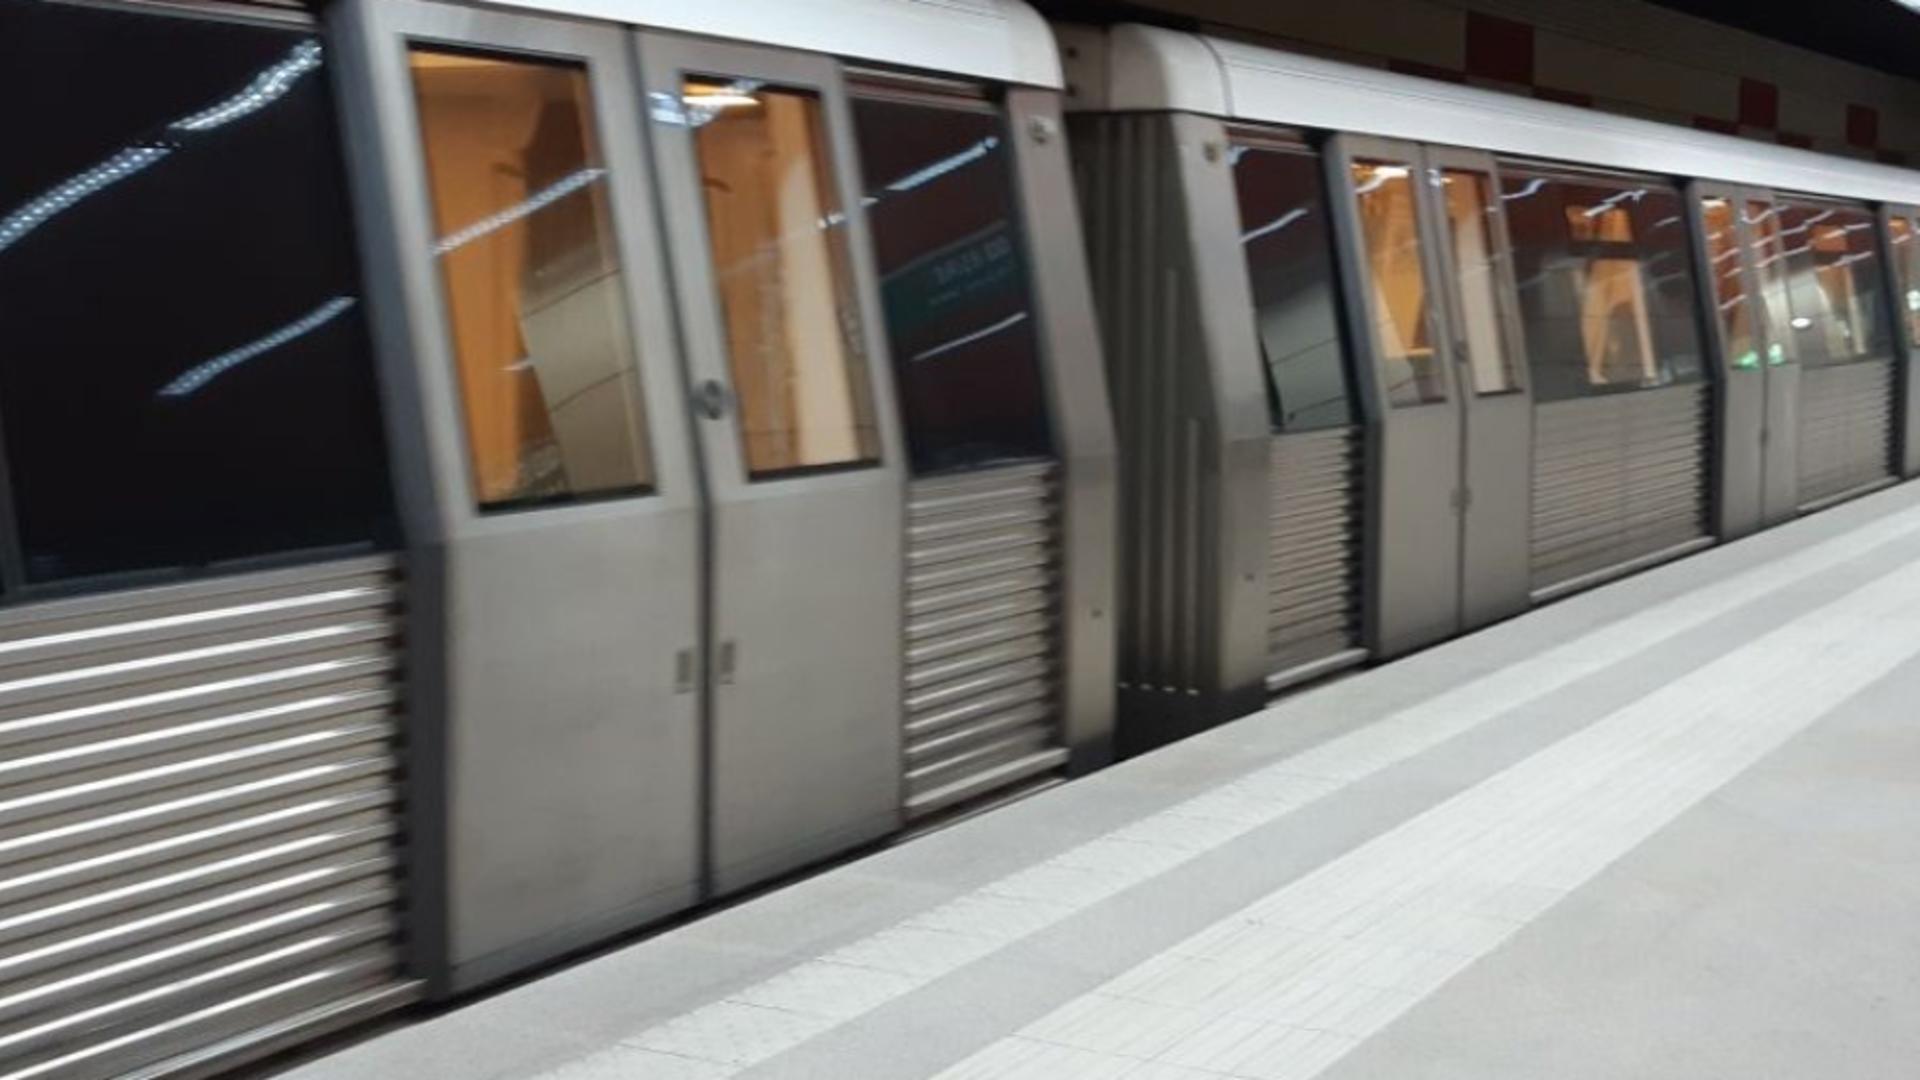 Circulația la metrou, oprită temporar pe Magistrala 5. Metrorex anunță probleme tehnice la sistemul de siguranţă a traficului